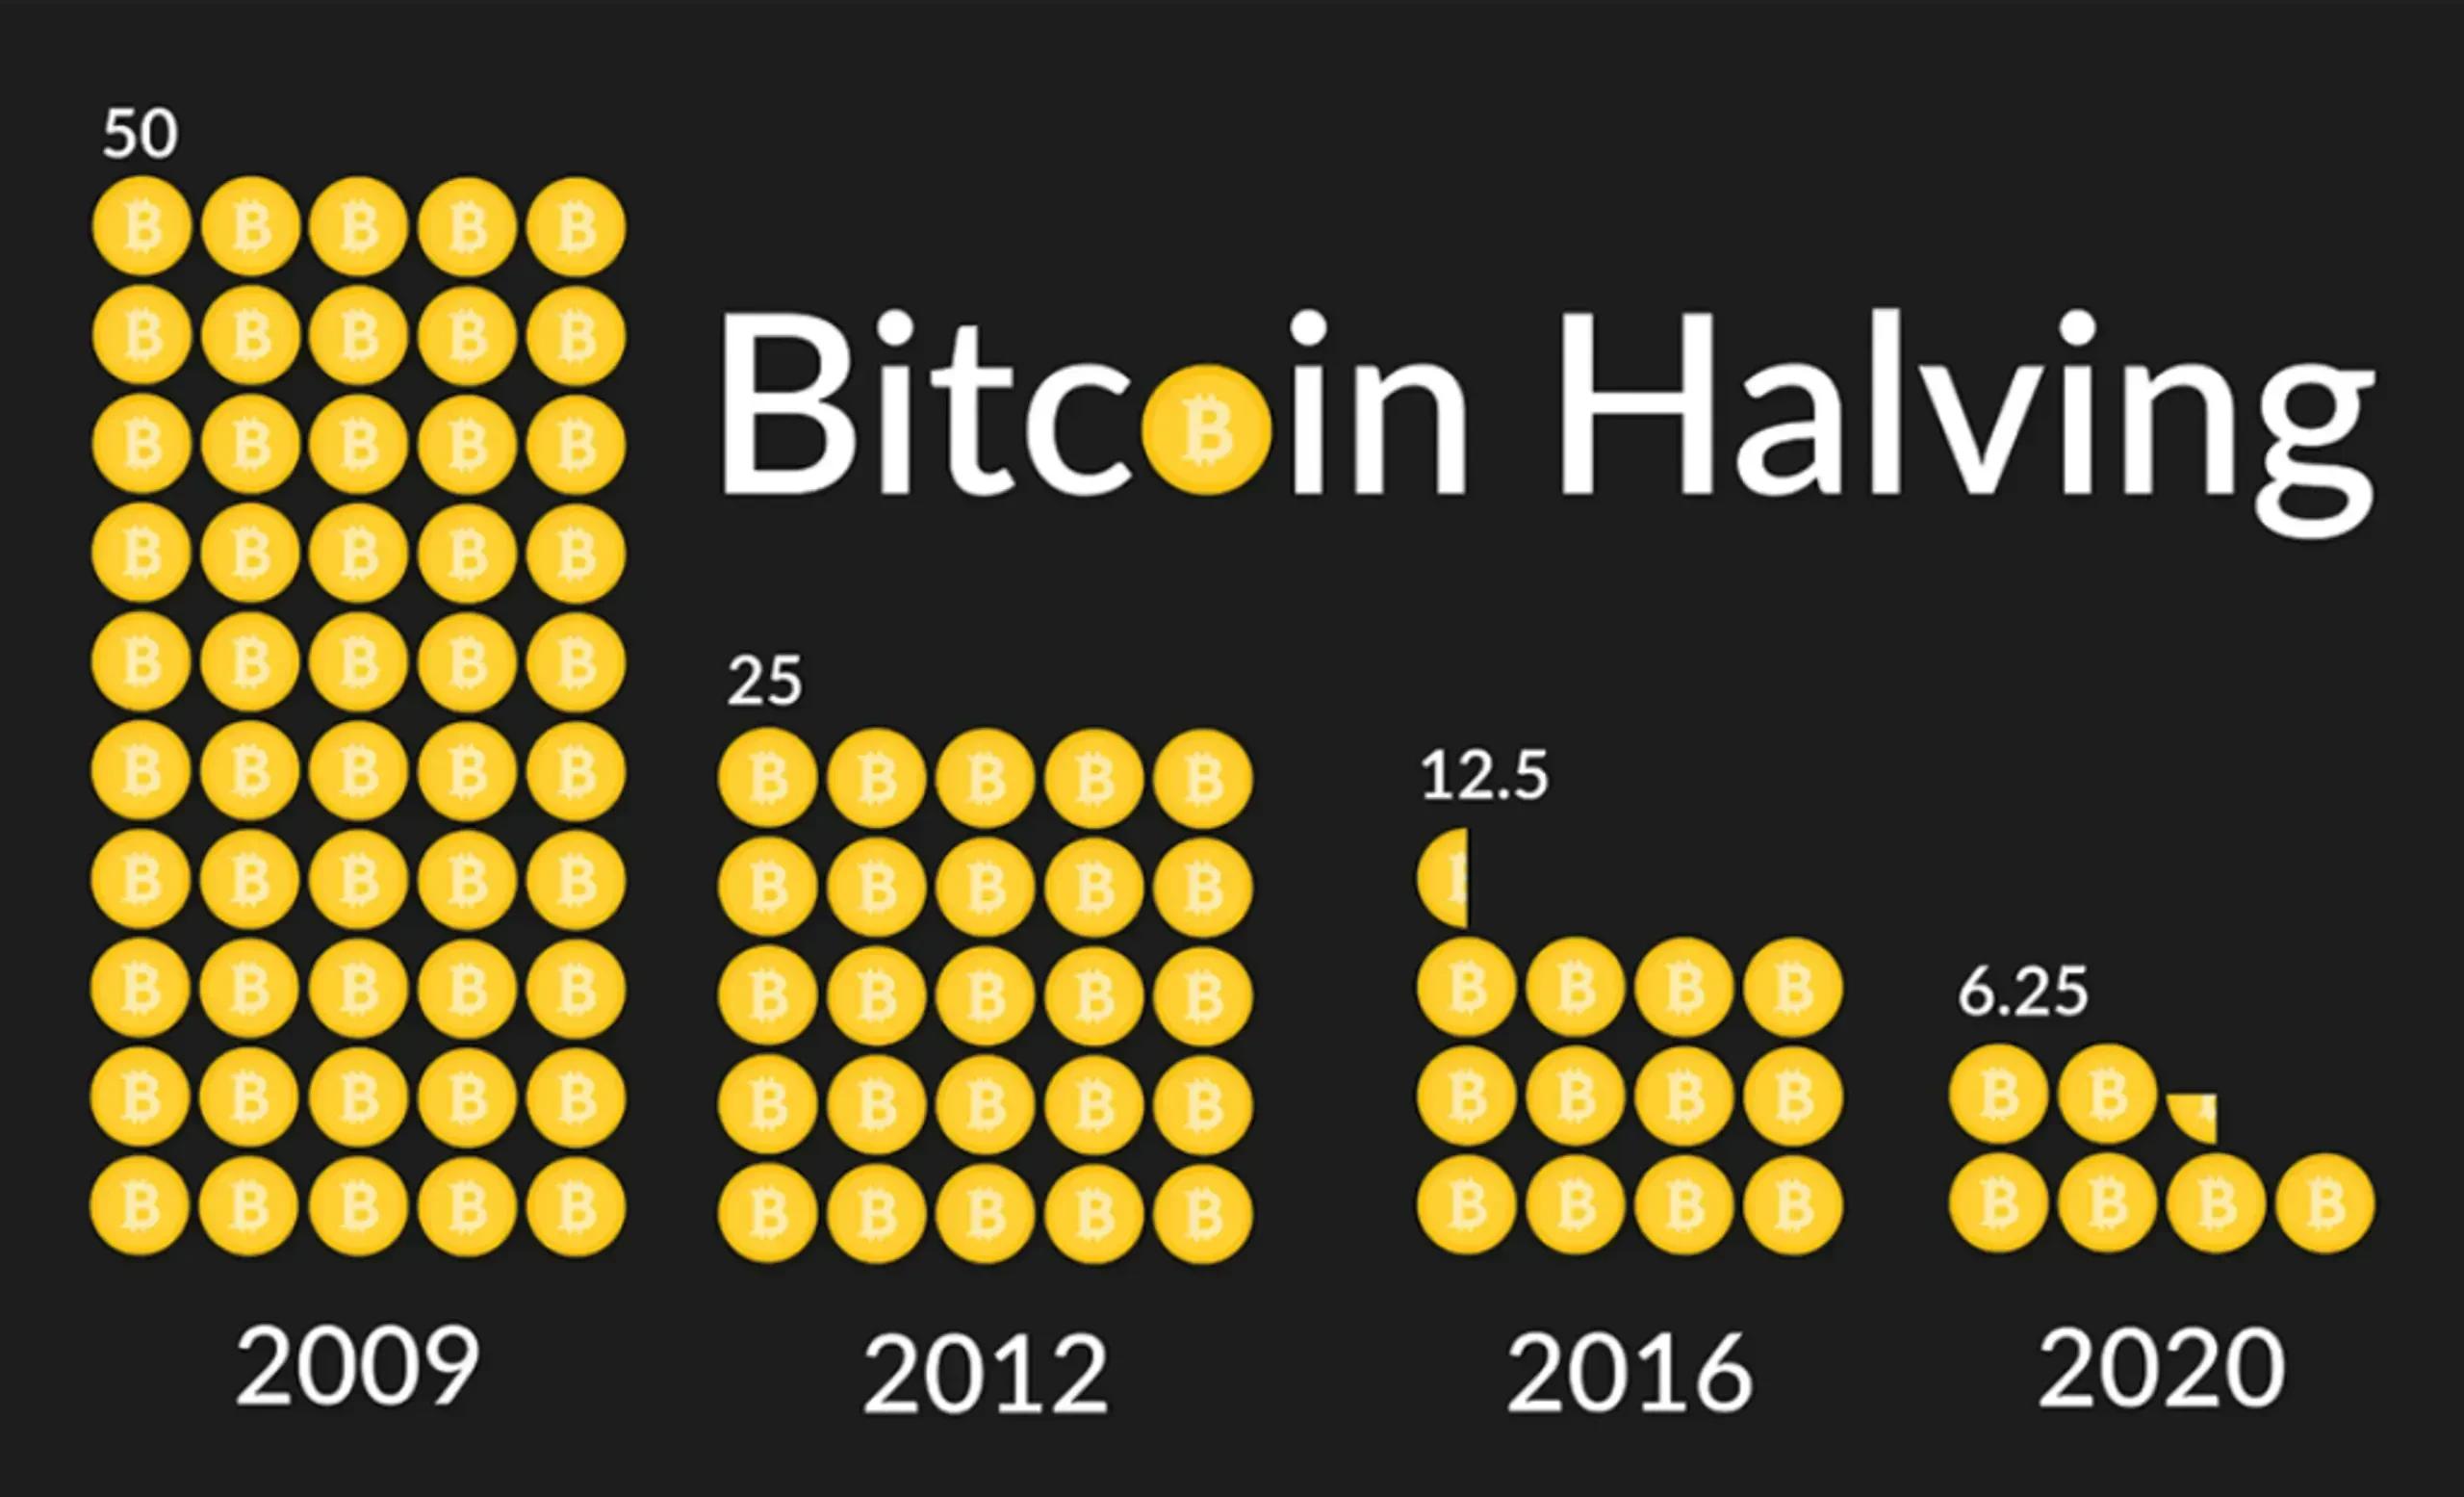 chu kỳ bitcoin halving